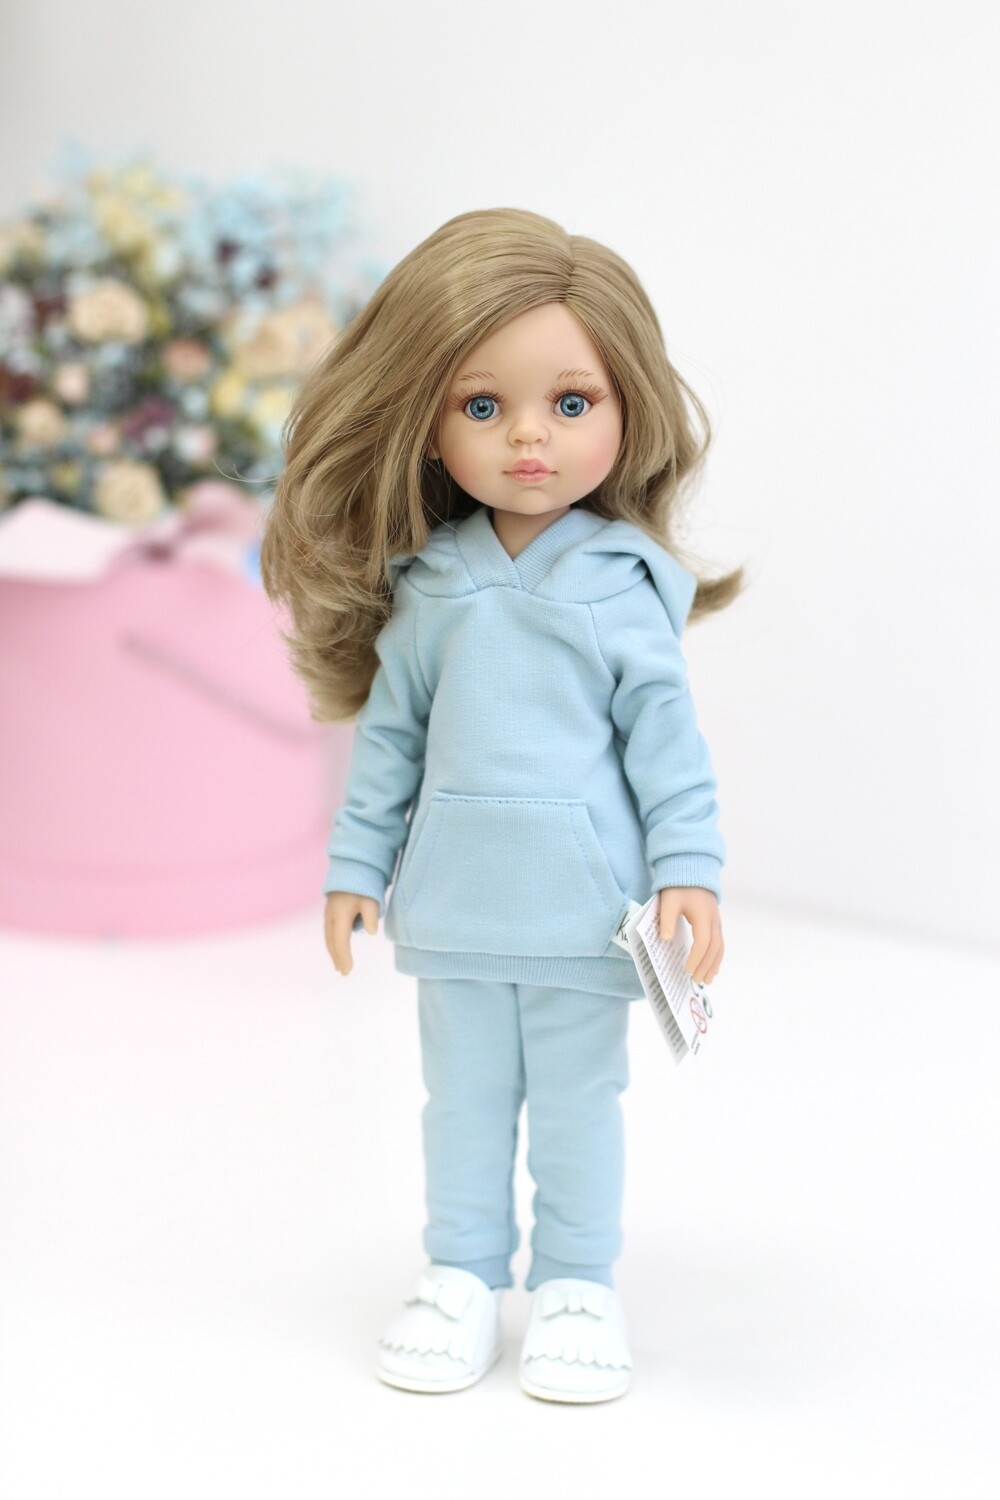 Кукла Карла с волосами по пояс в голубом наряде, с голубыми глазами (Паола Рейна), 34 см